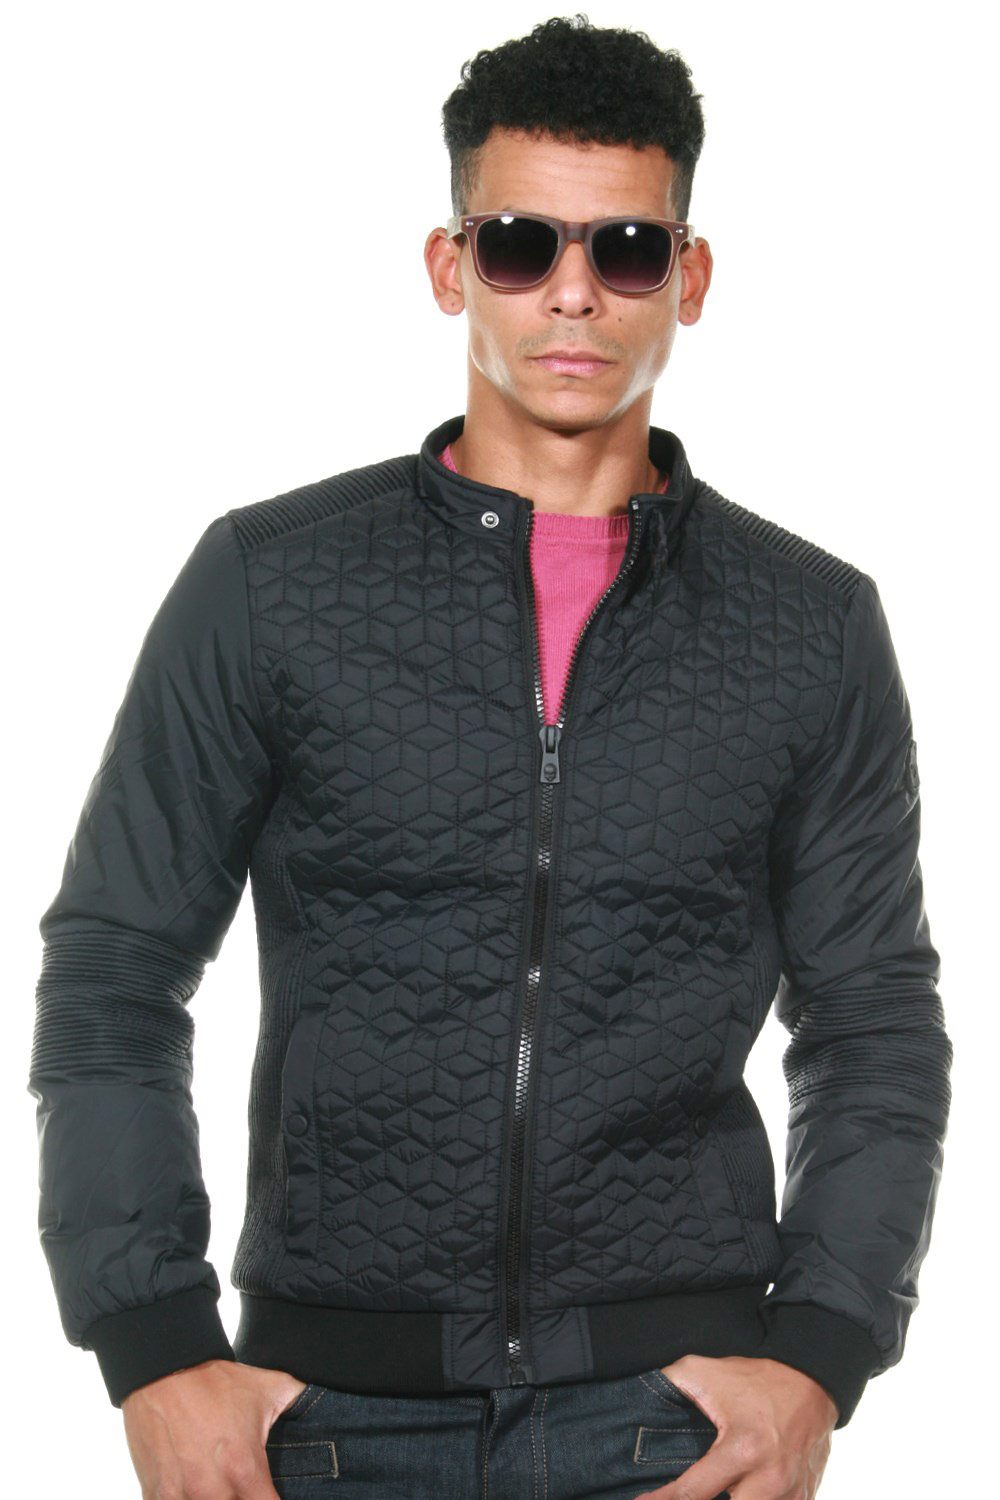 KAPORAL jacket | shop at OBOY.com